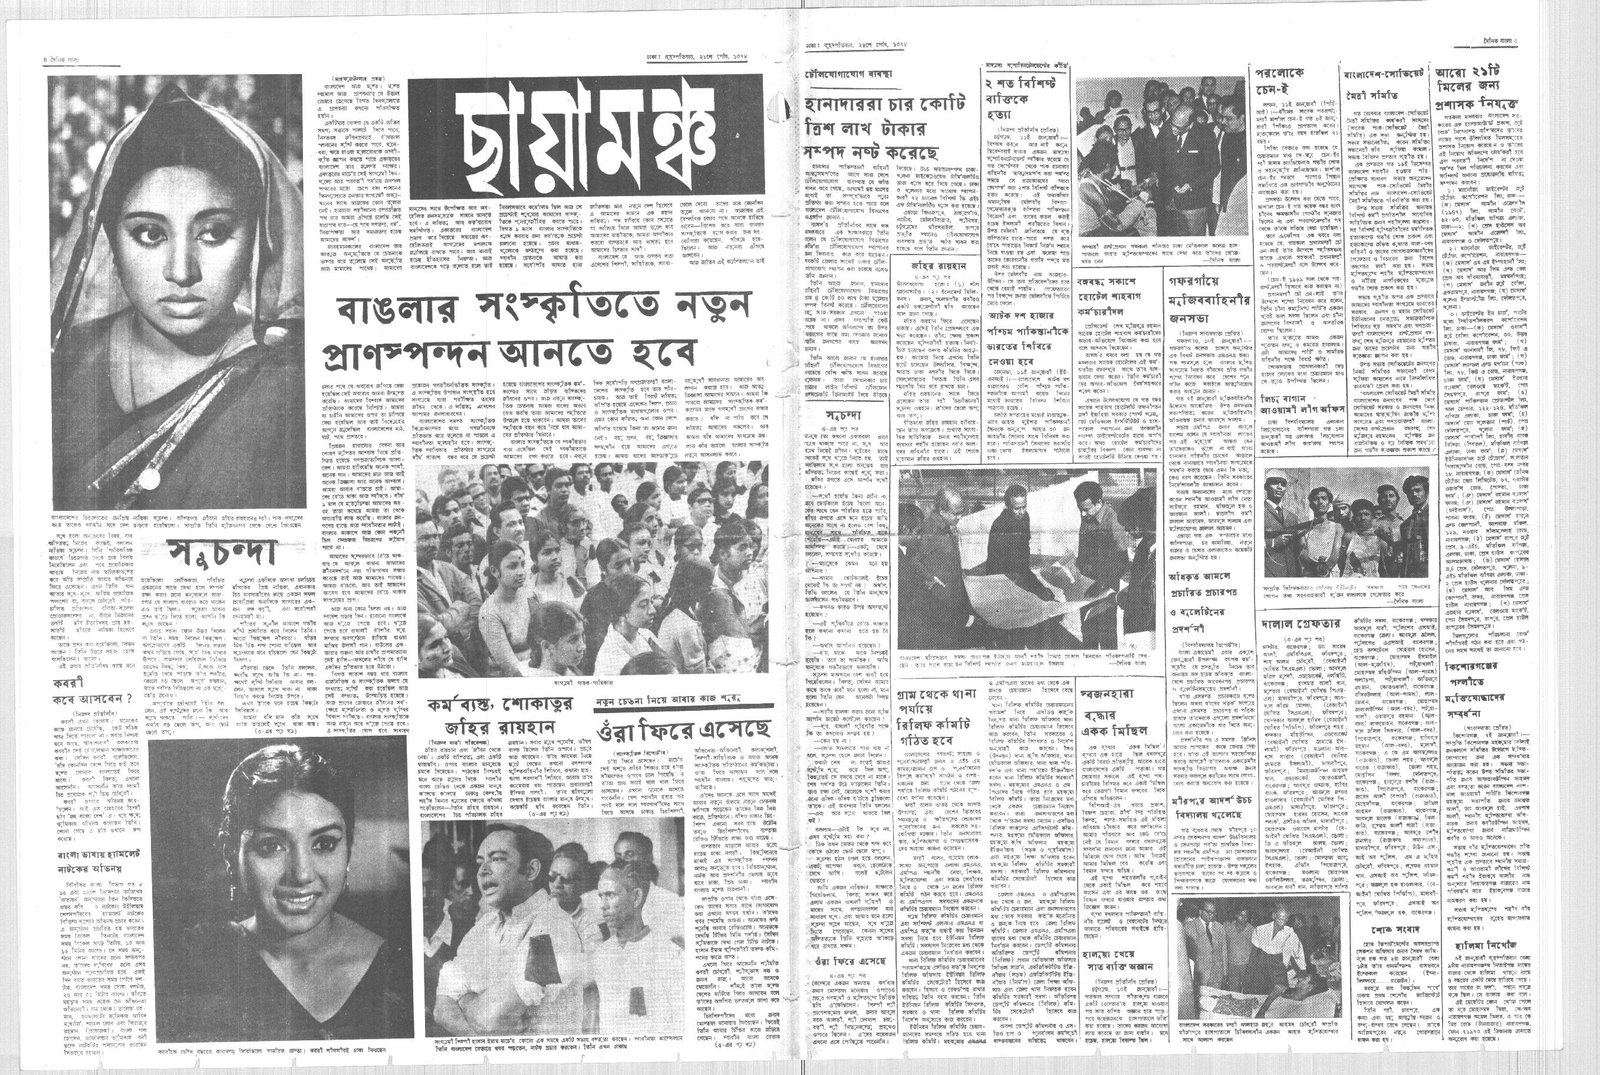 13JAN1972-DAINIK BANGLA-Regular-Page 4 and 5